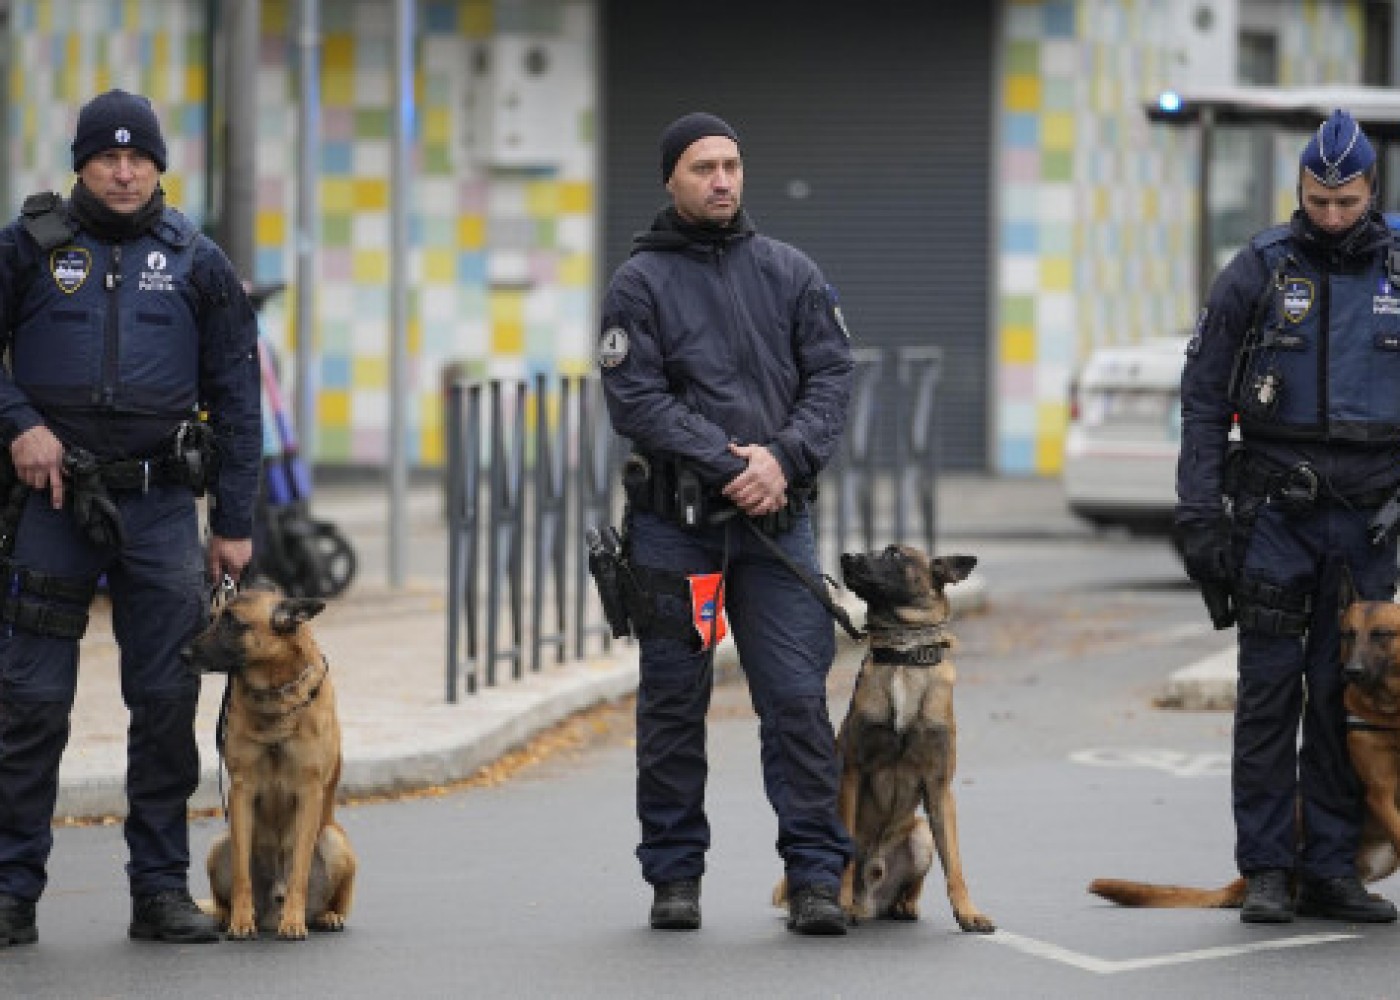 Çeçenlər Belçikada terror aktı törətmək istəyirmiş